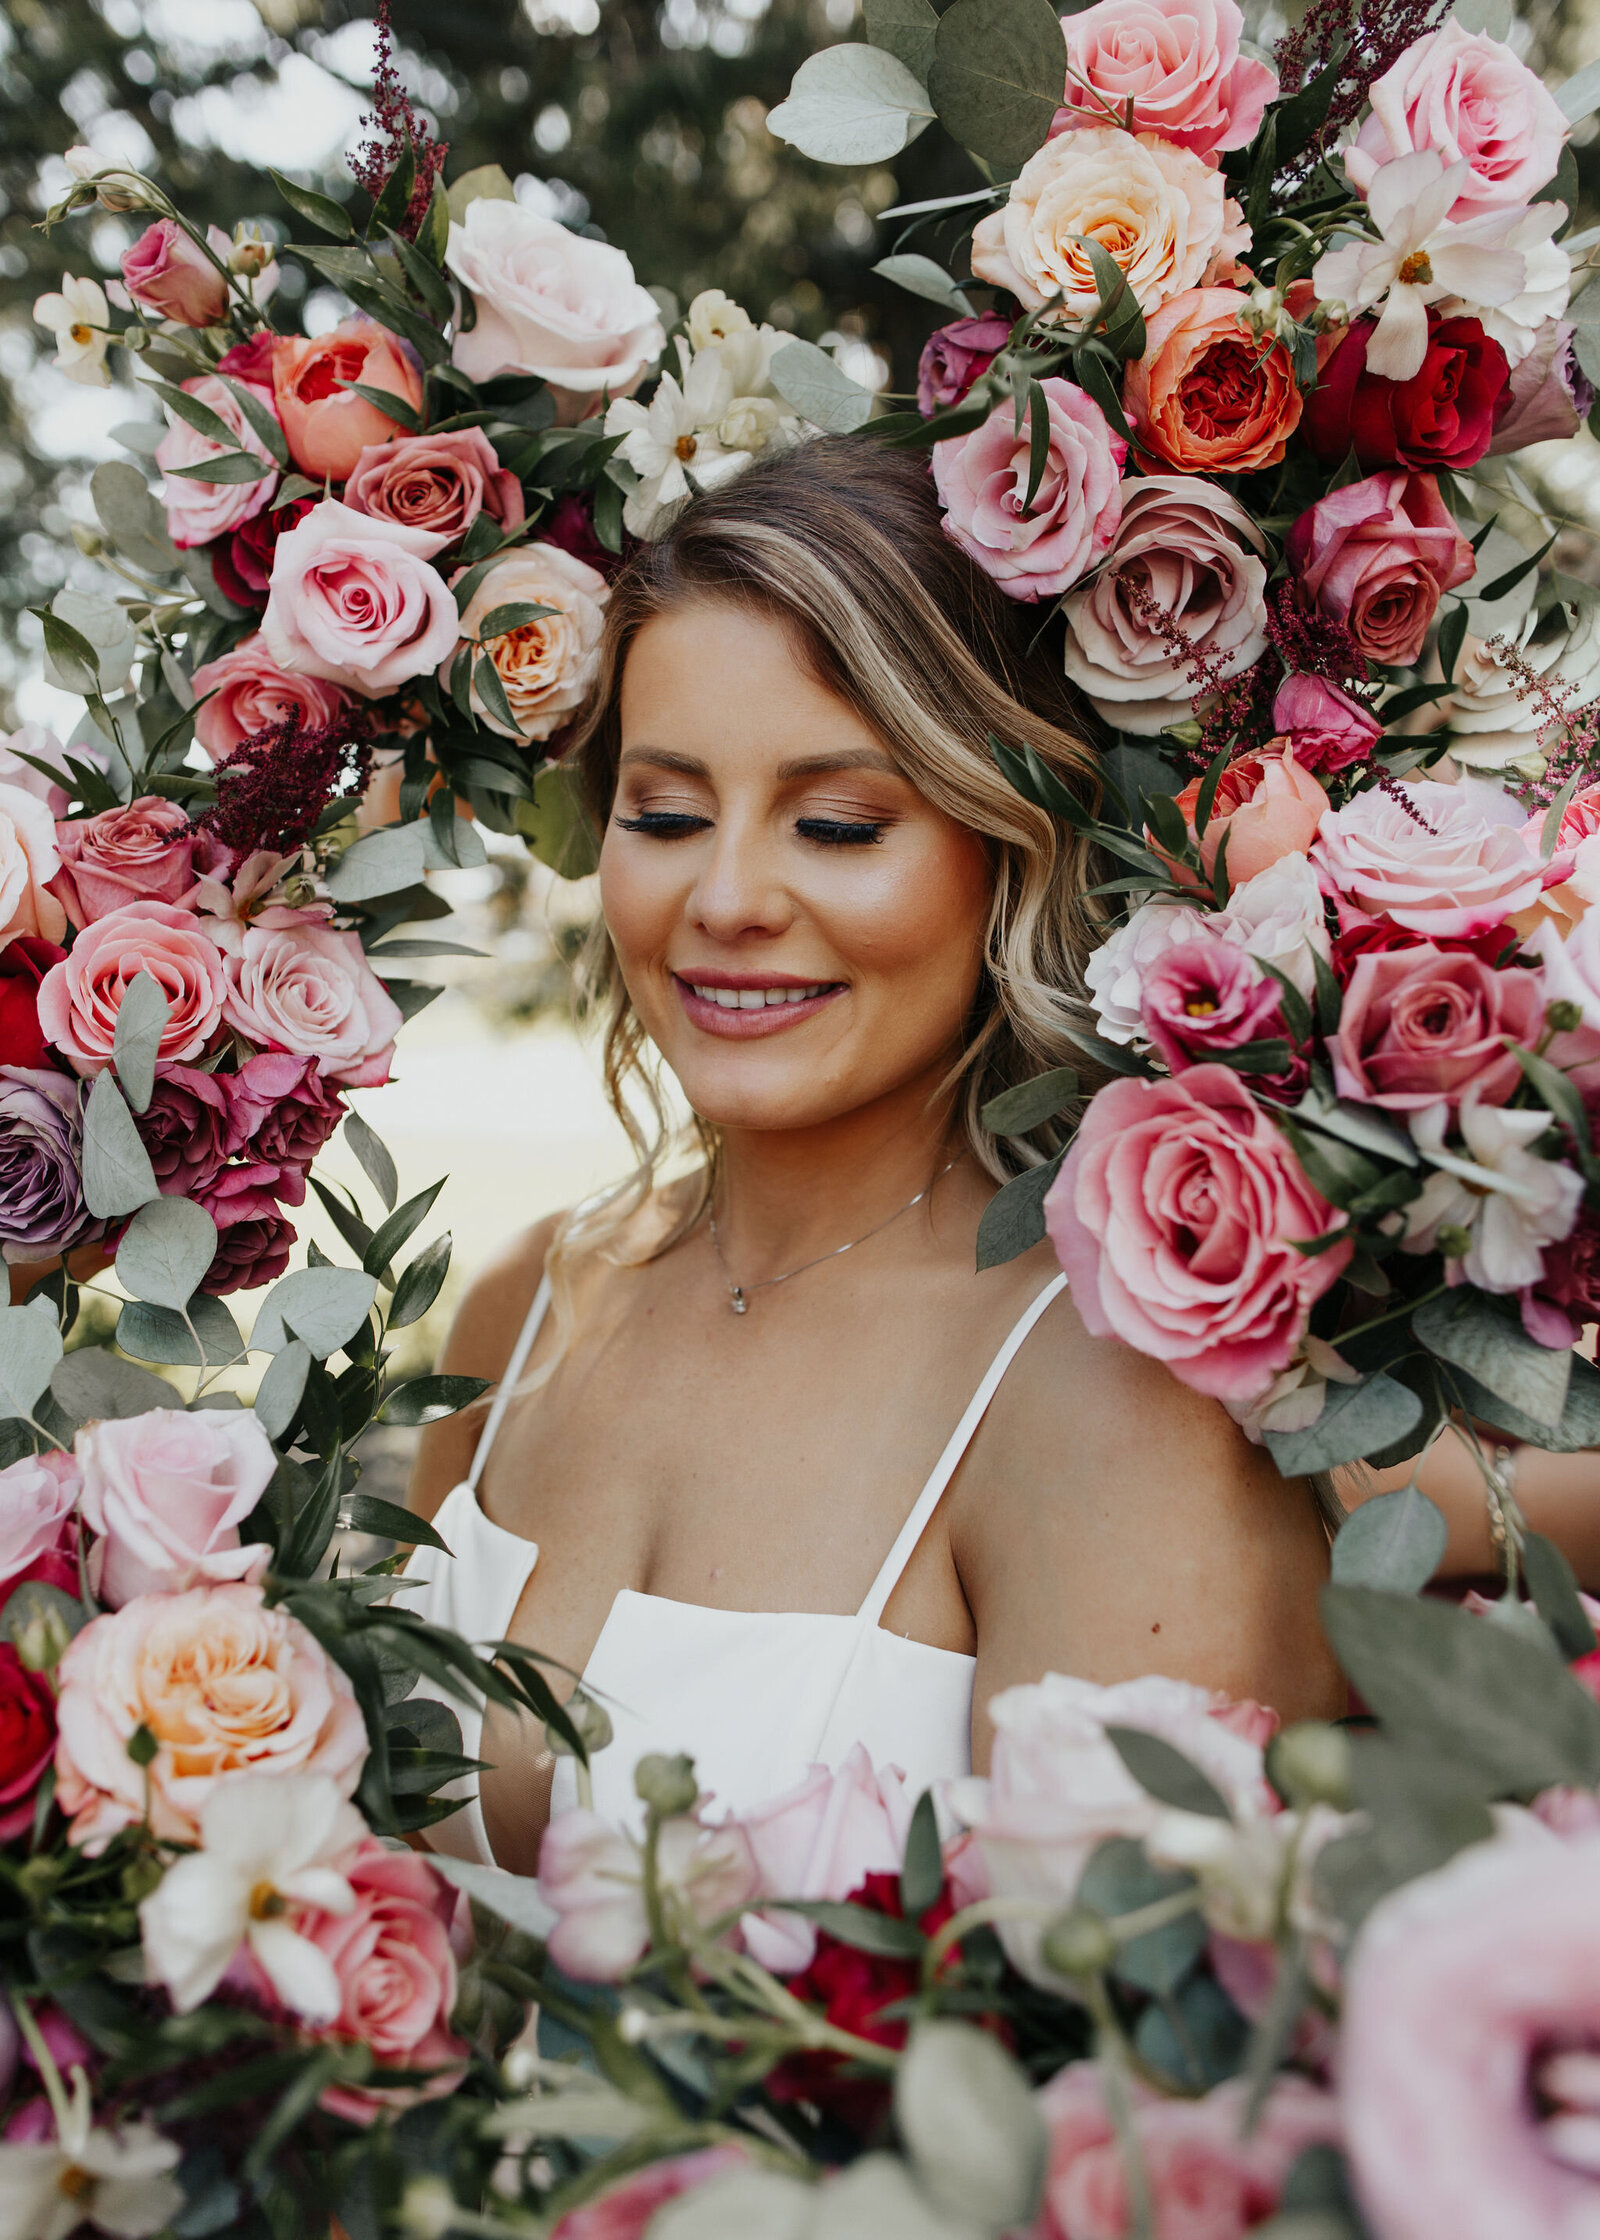 bride-portrait-flowers-bouquets-pink-roses